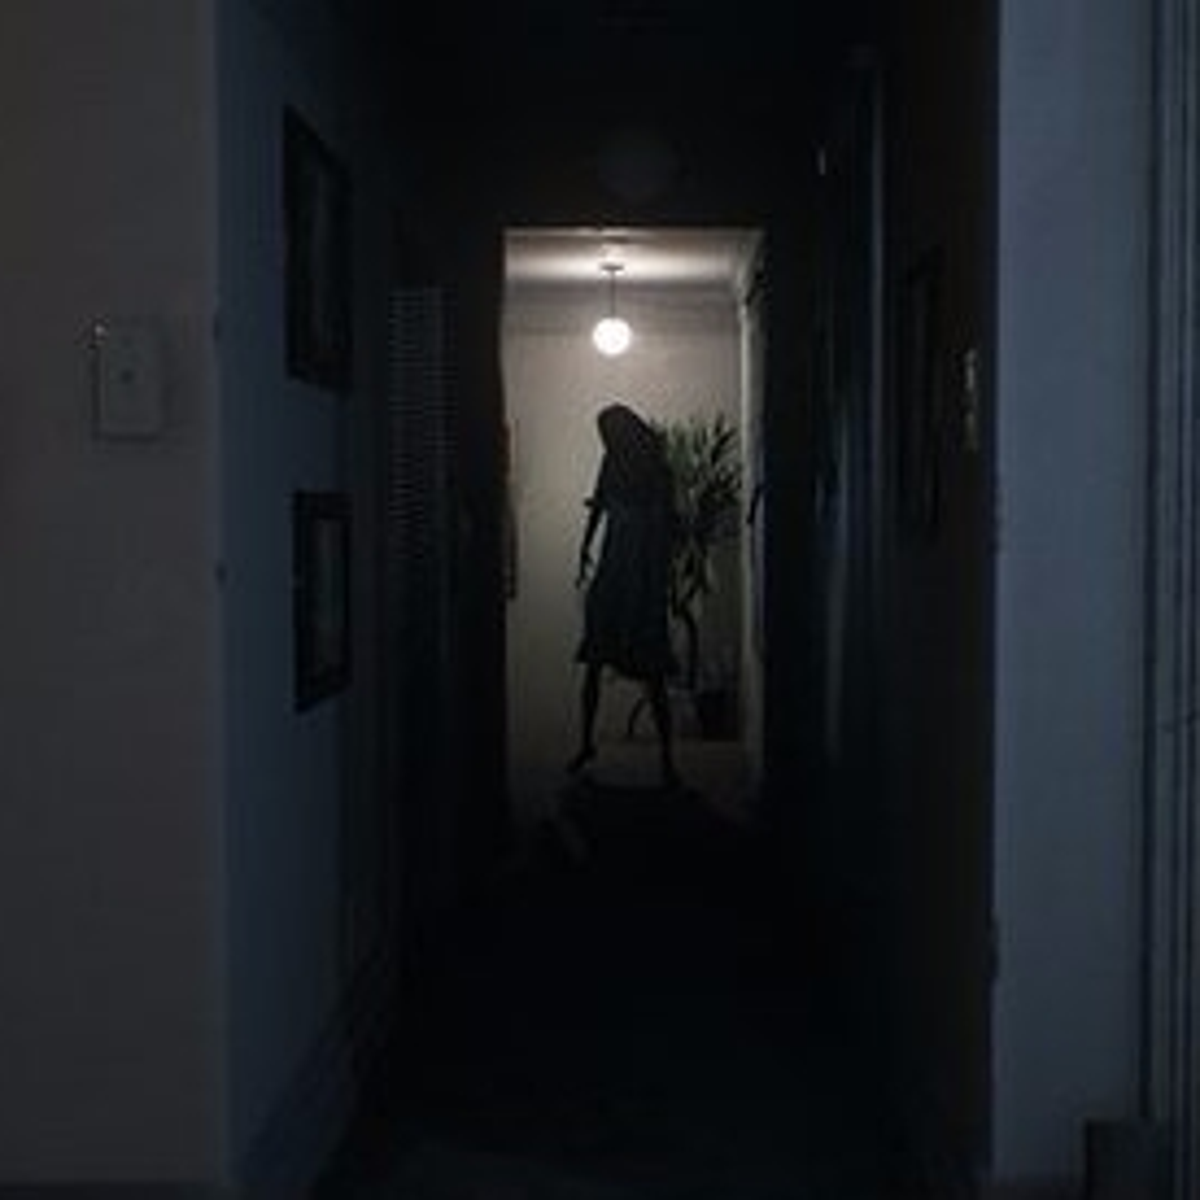 Visage, mais um jogo de terror que quer ser Silent Hill